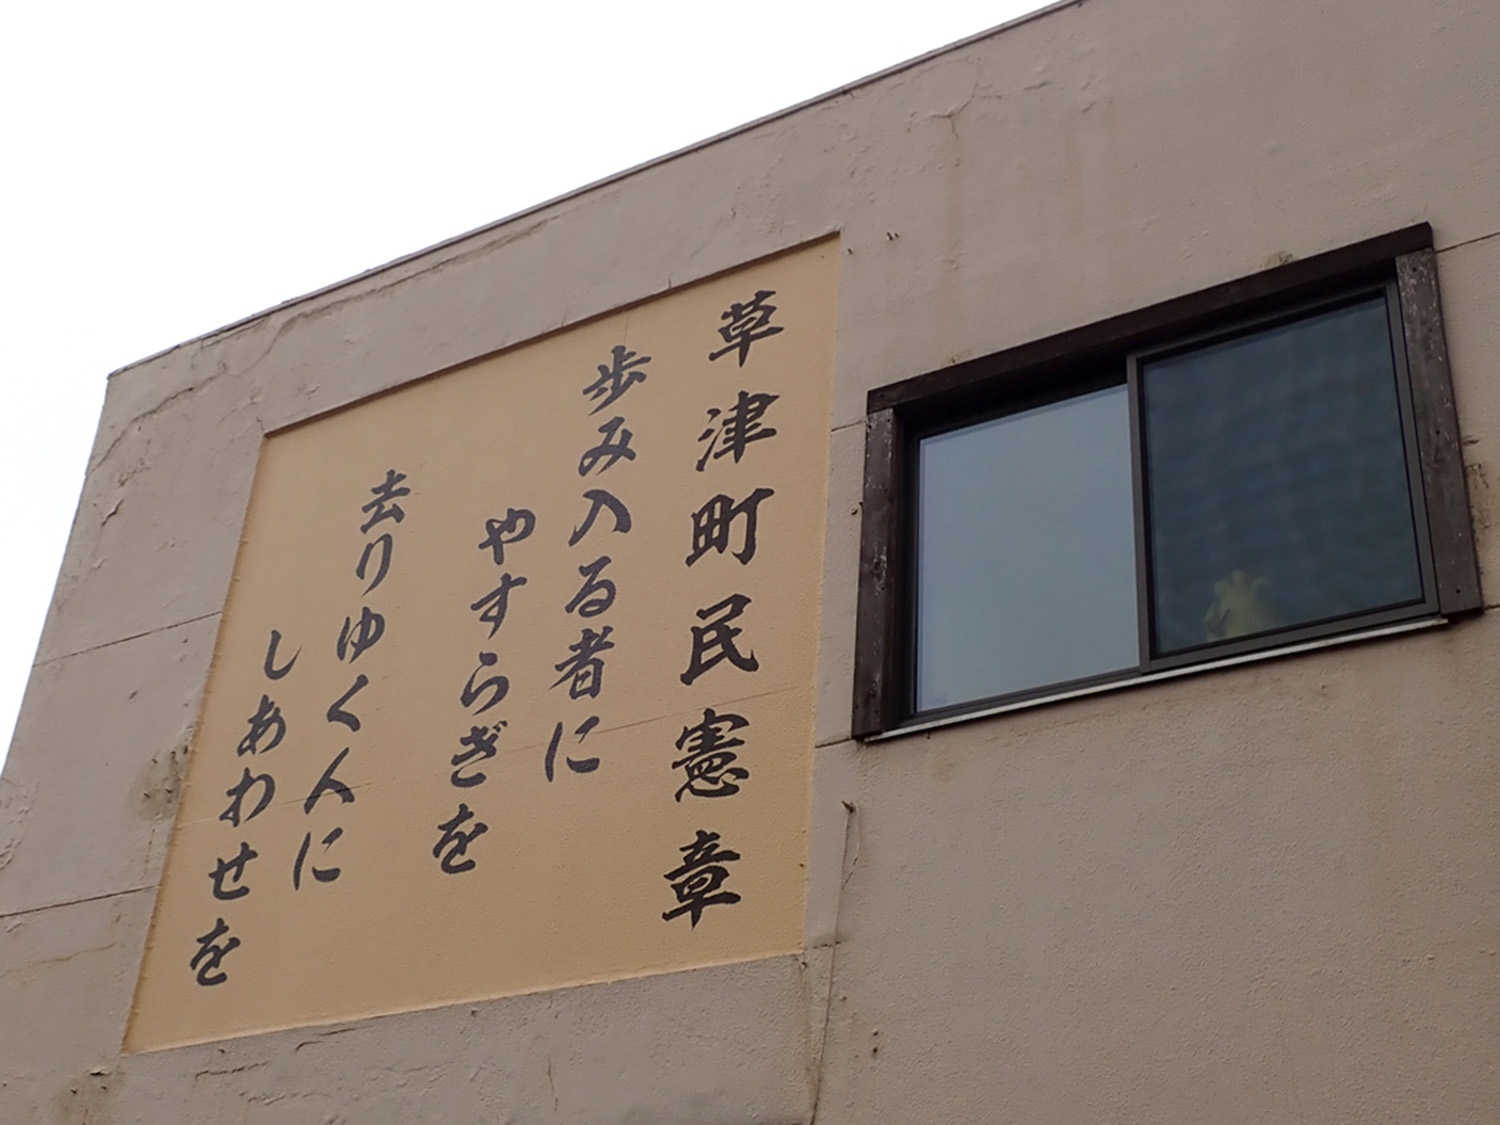 建物の壁面に大書された草津町民憲章。温泉の町らしい内容。